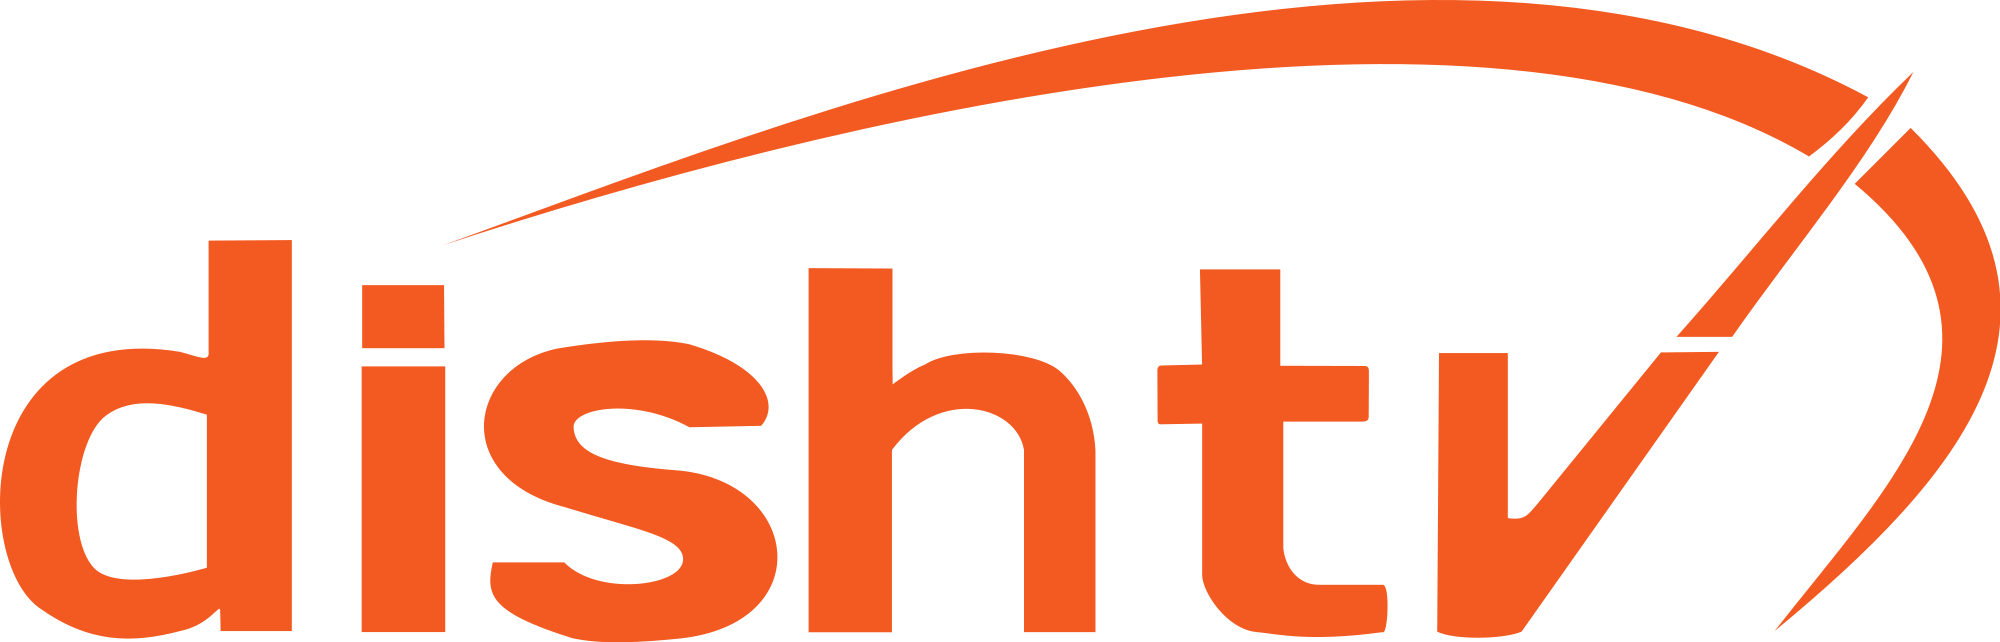 Dish_TV_Logo.svg